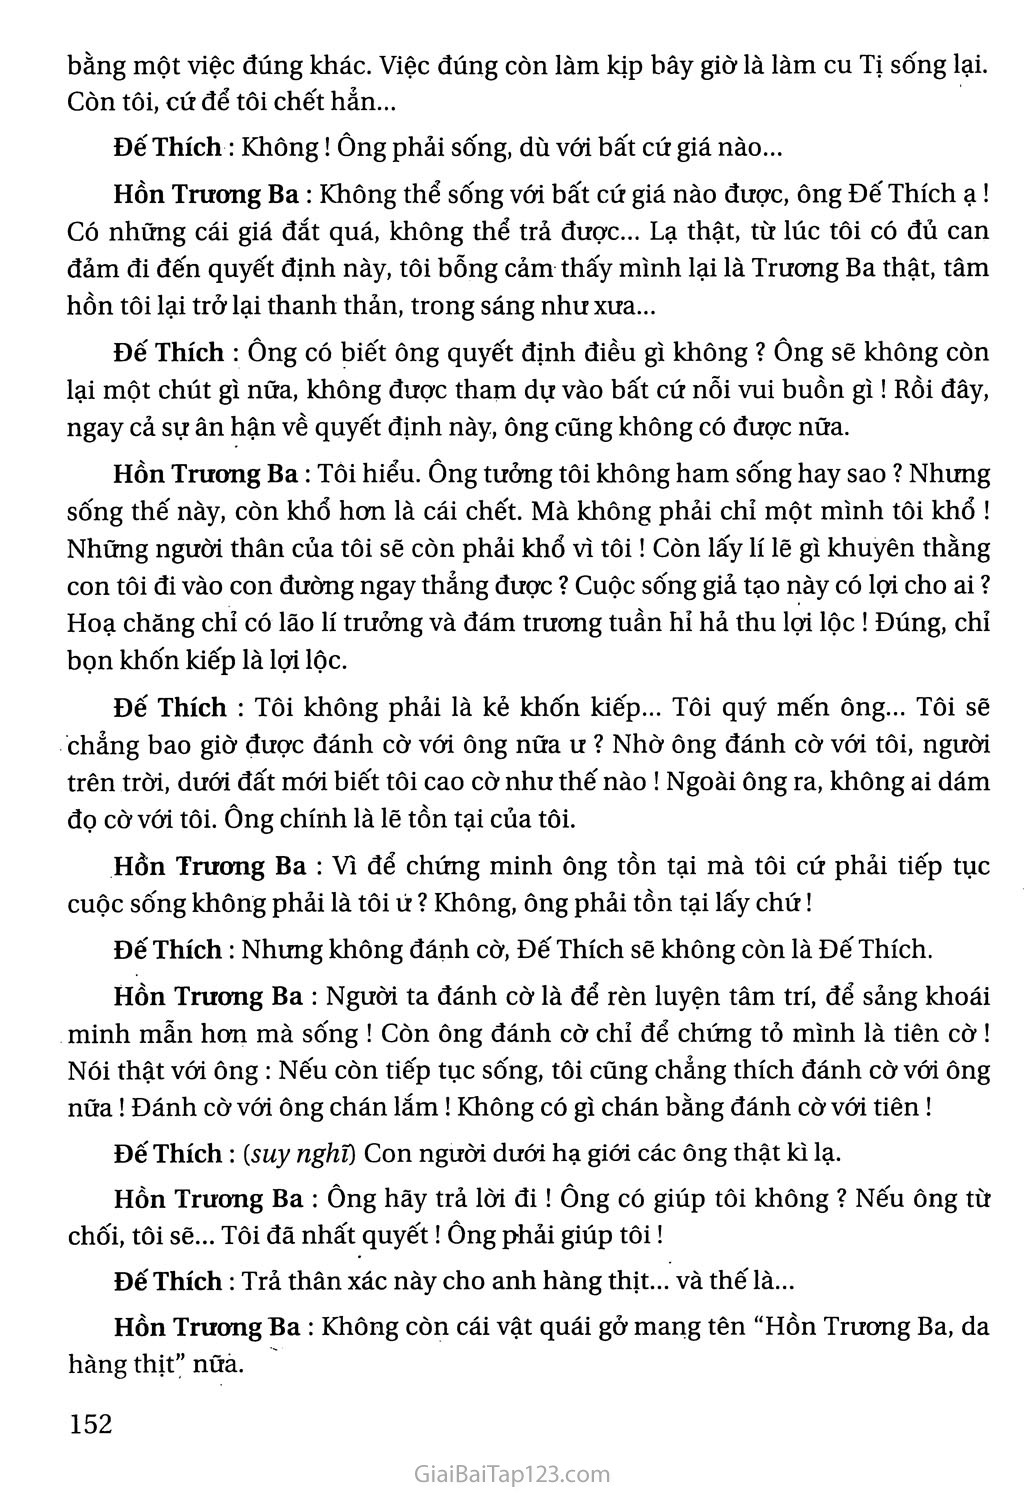 Hồn Trương Ba, da hàng thịt (trích) trang 11